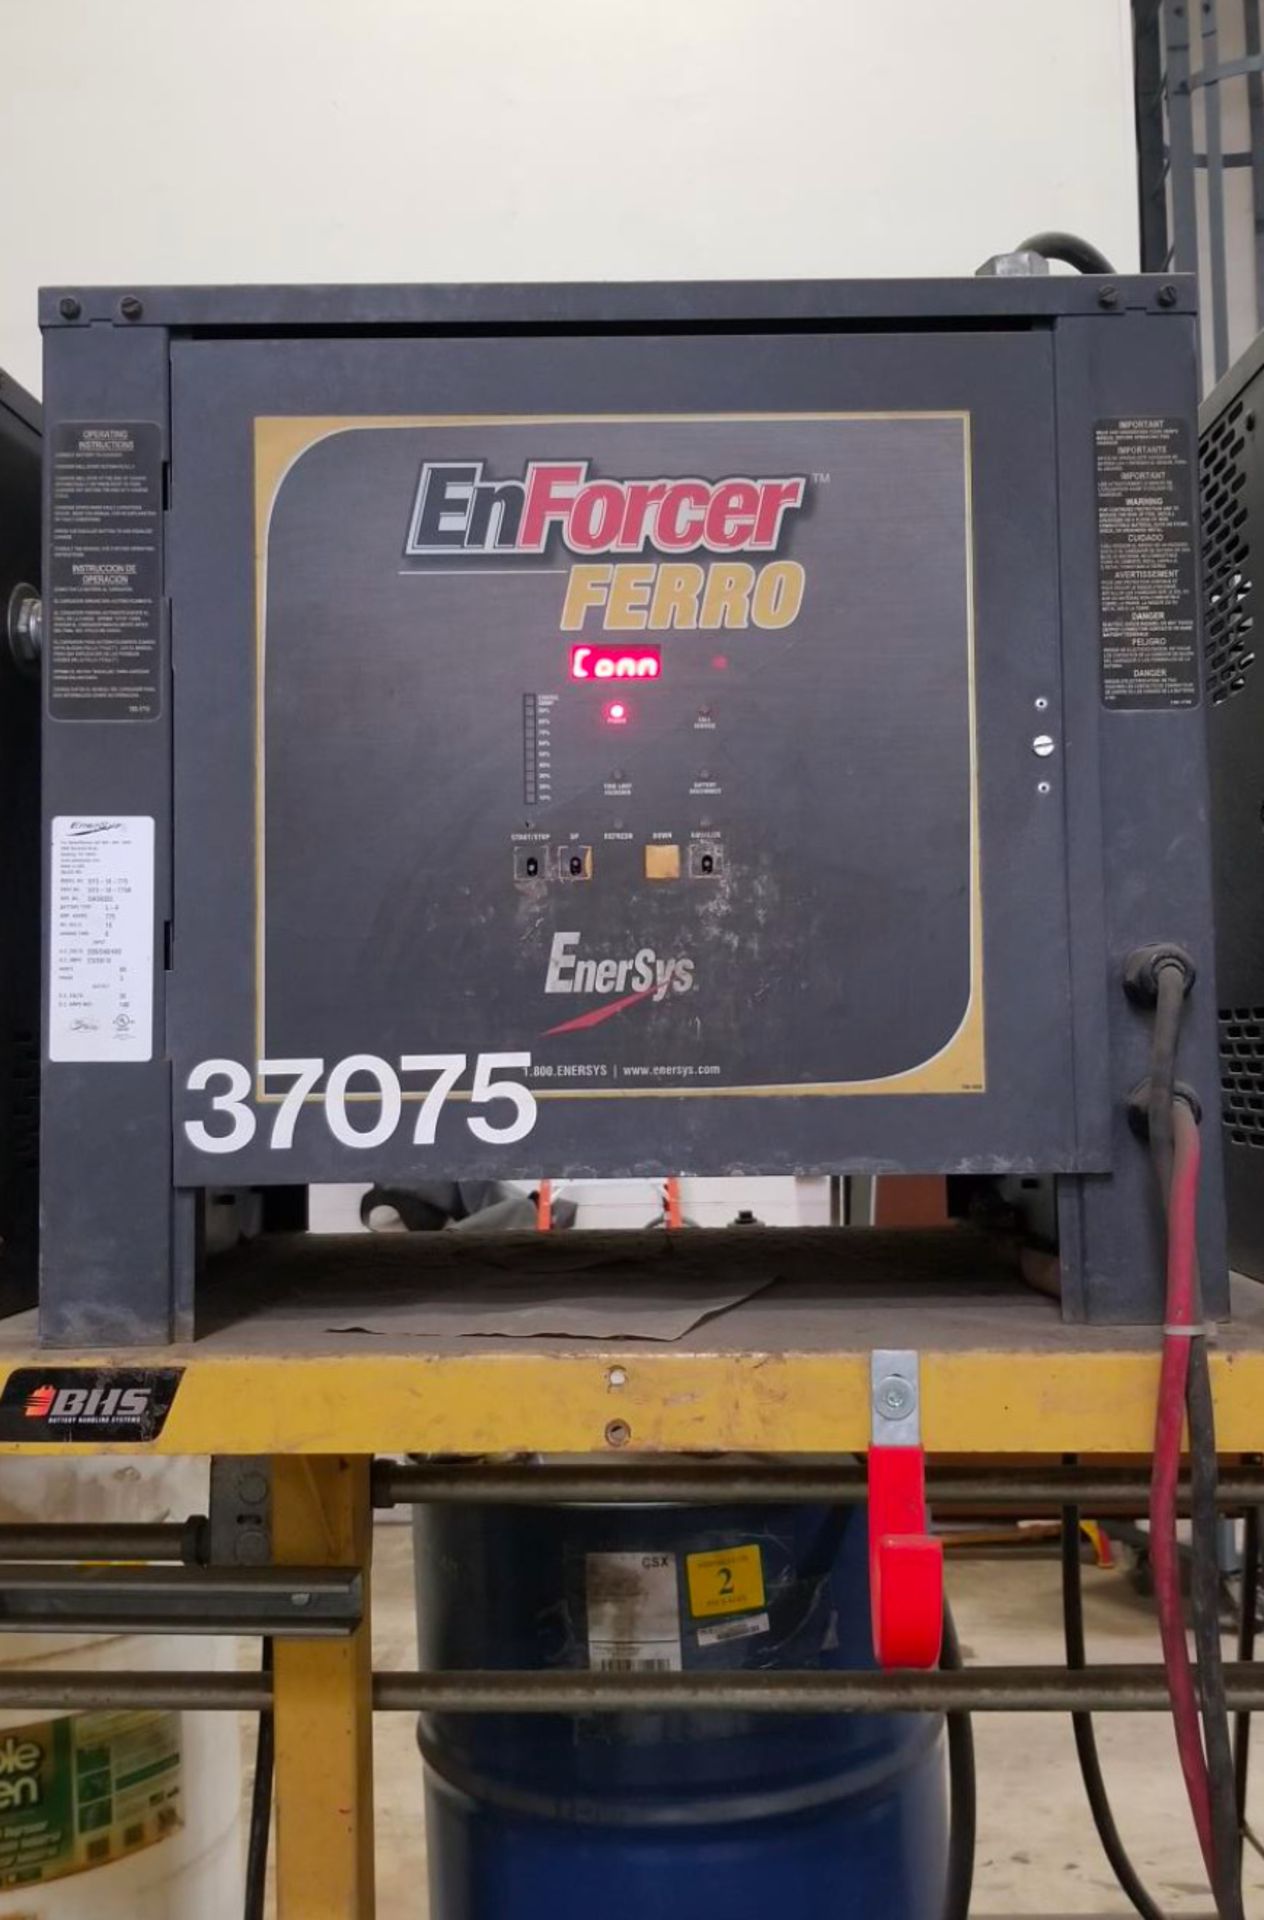 (4) Enersys Enforcer Ferro Forklift Battery Chargers, 36V / 140 Amps Max, Models EF3-18-775